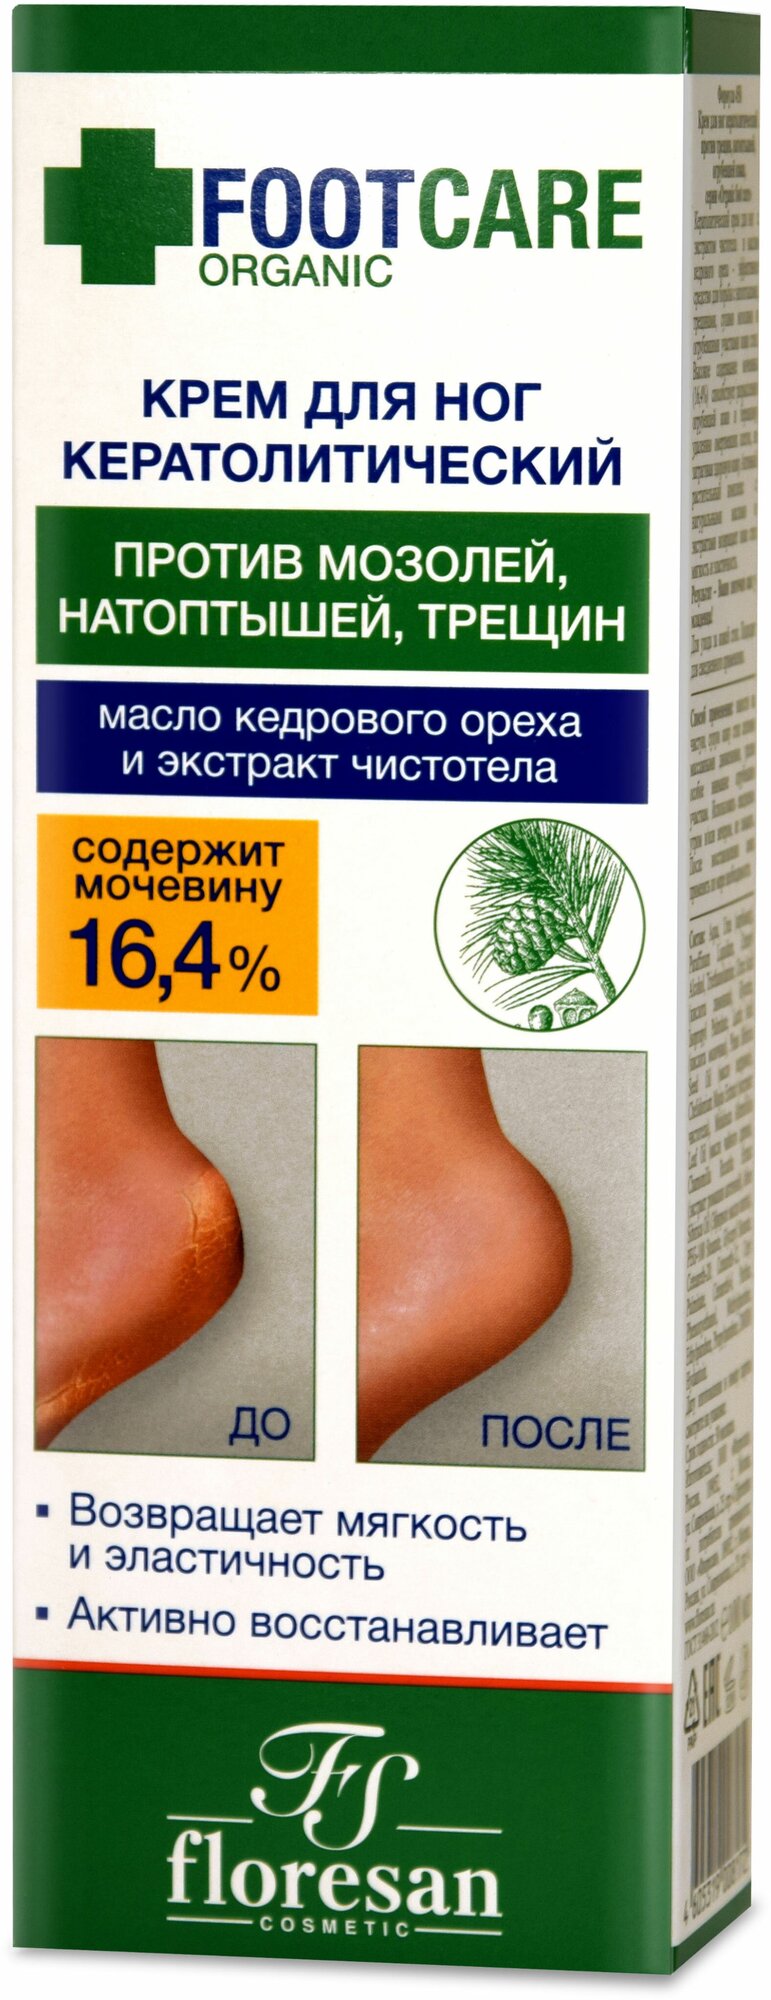 Крем для ног Floresan Ofganic foot care Кератолитический 100мл - фото №8